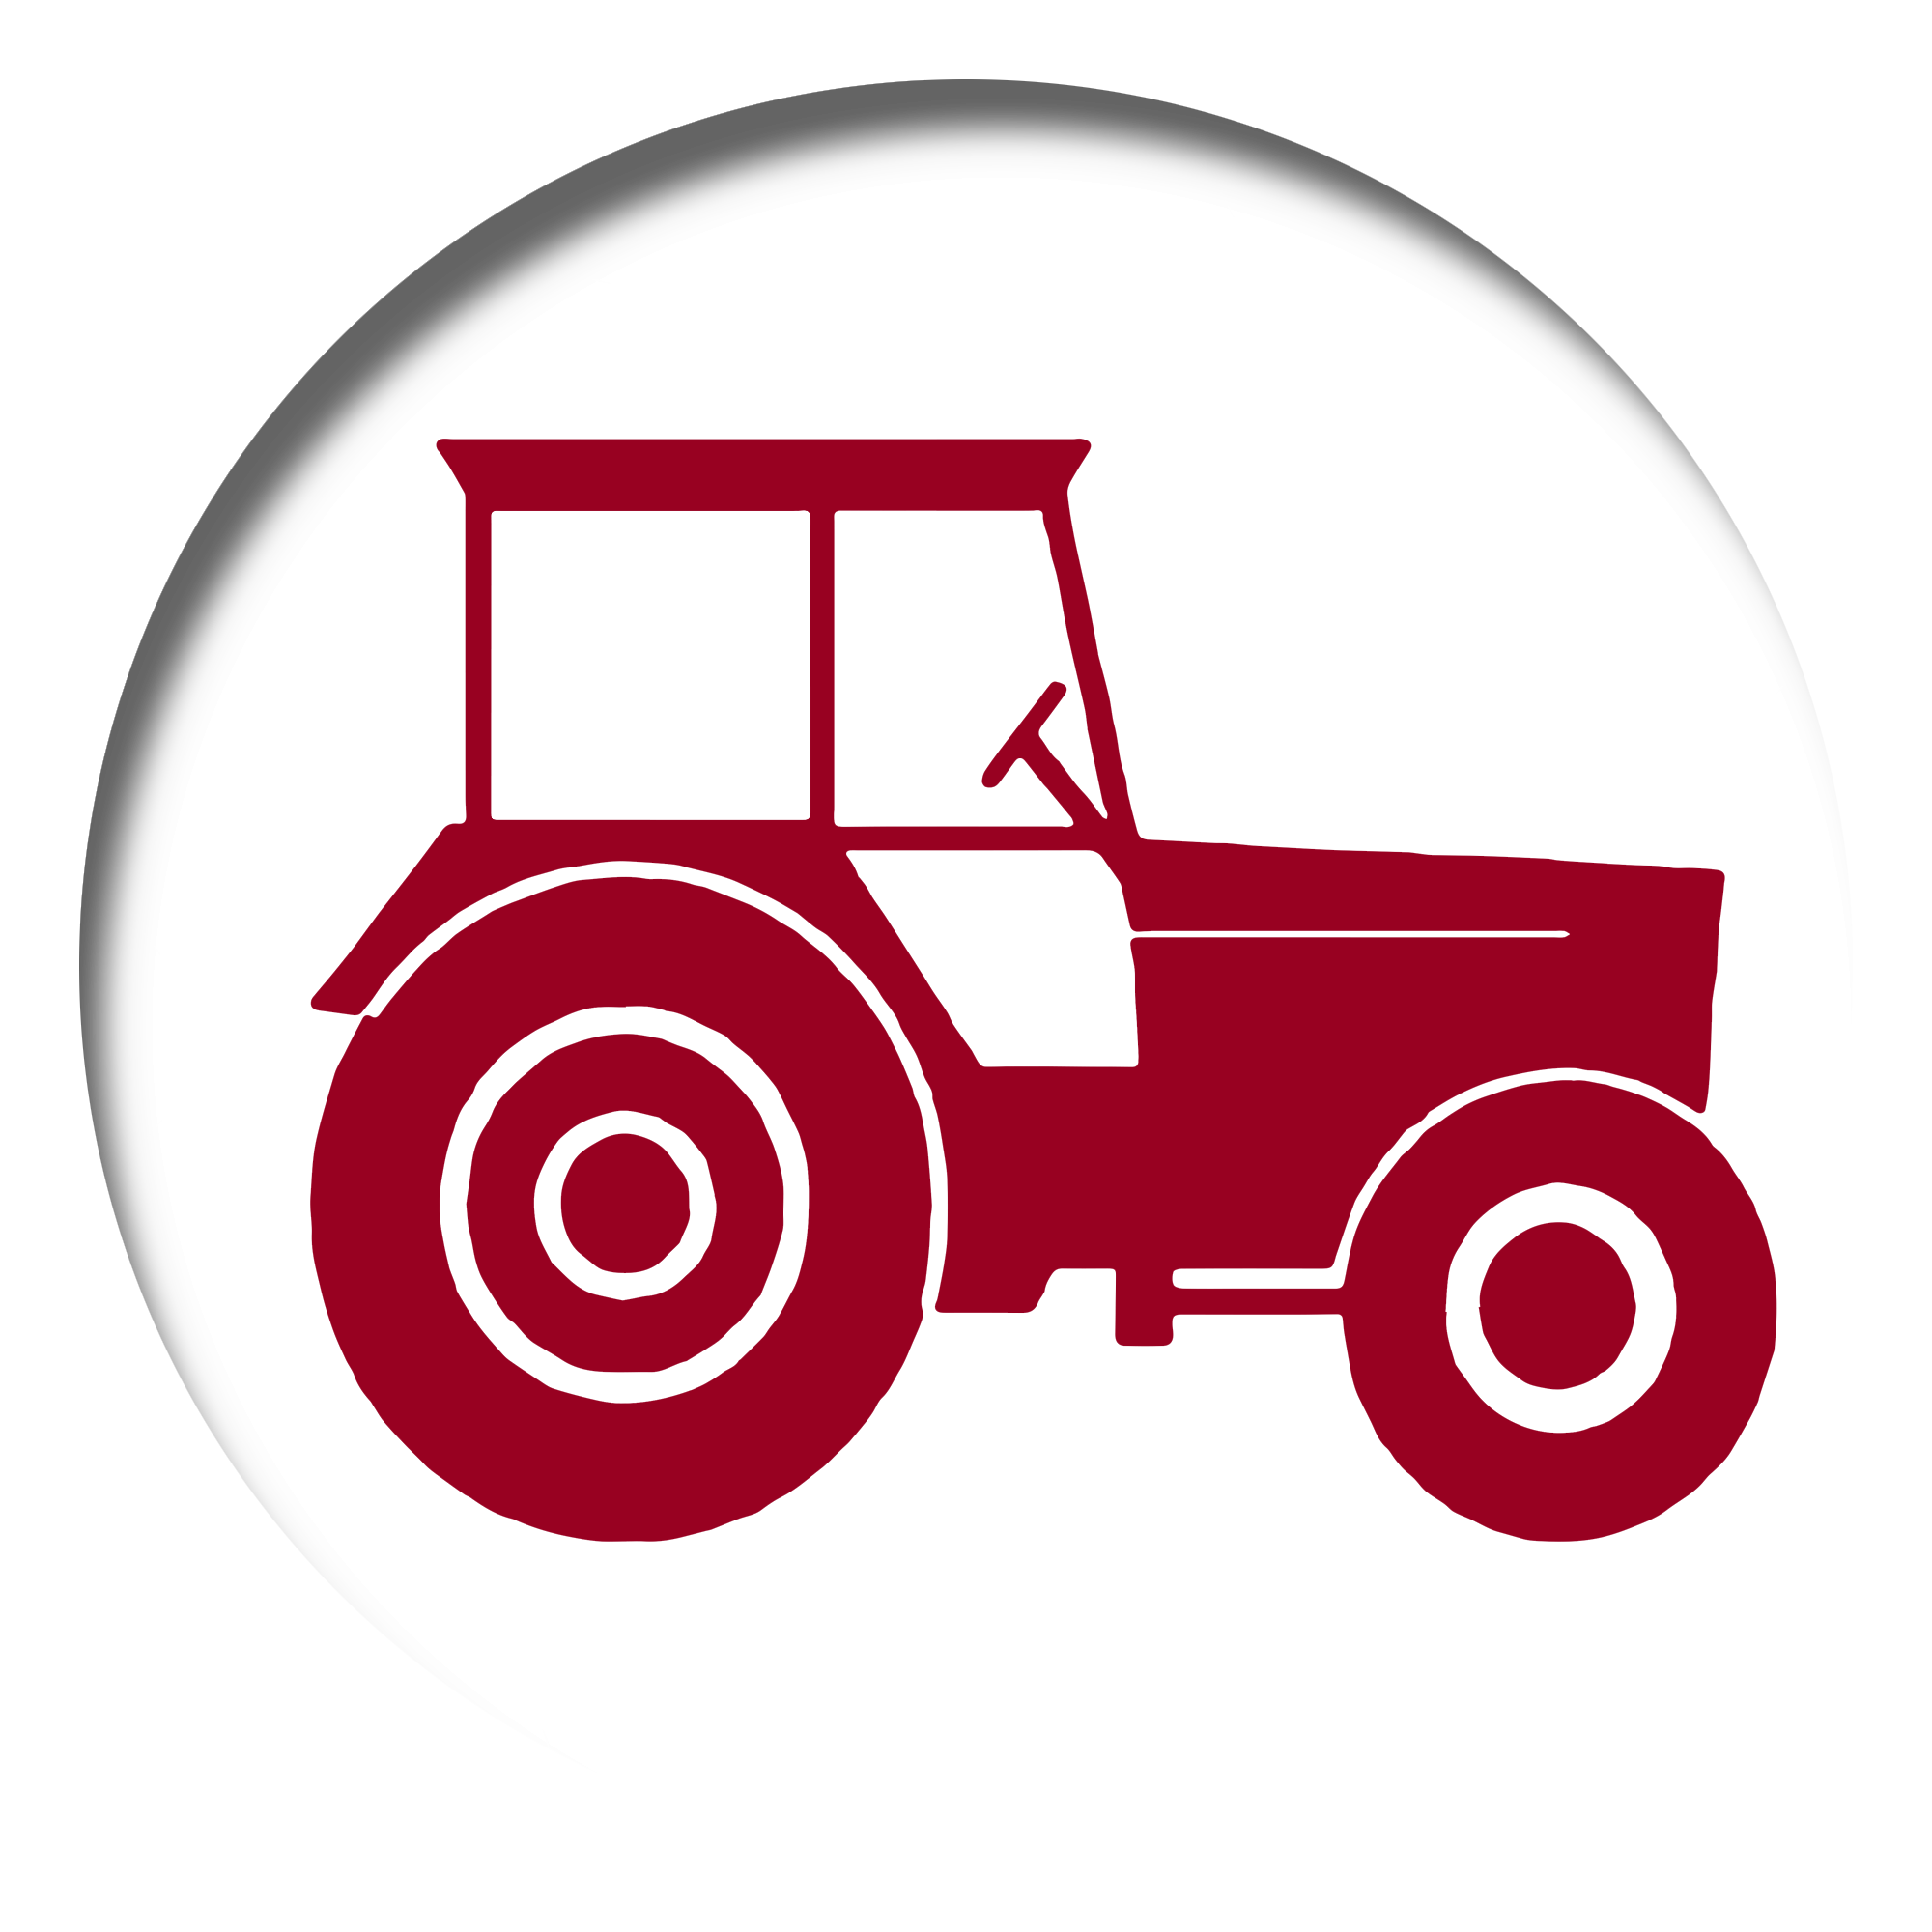 hendry swinton mckenzie, farmers insurance png logo #5739